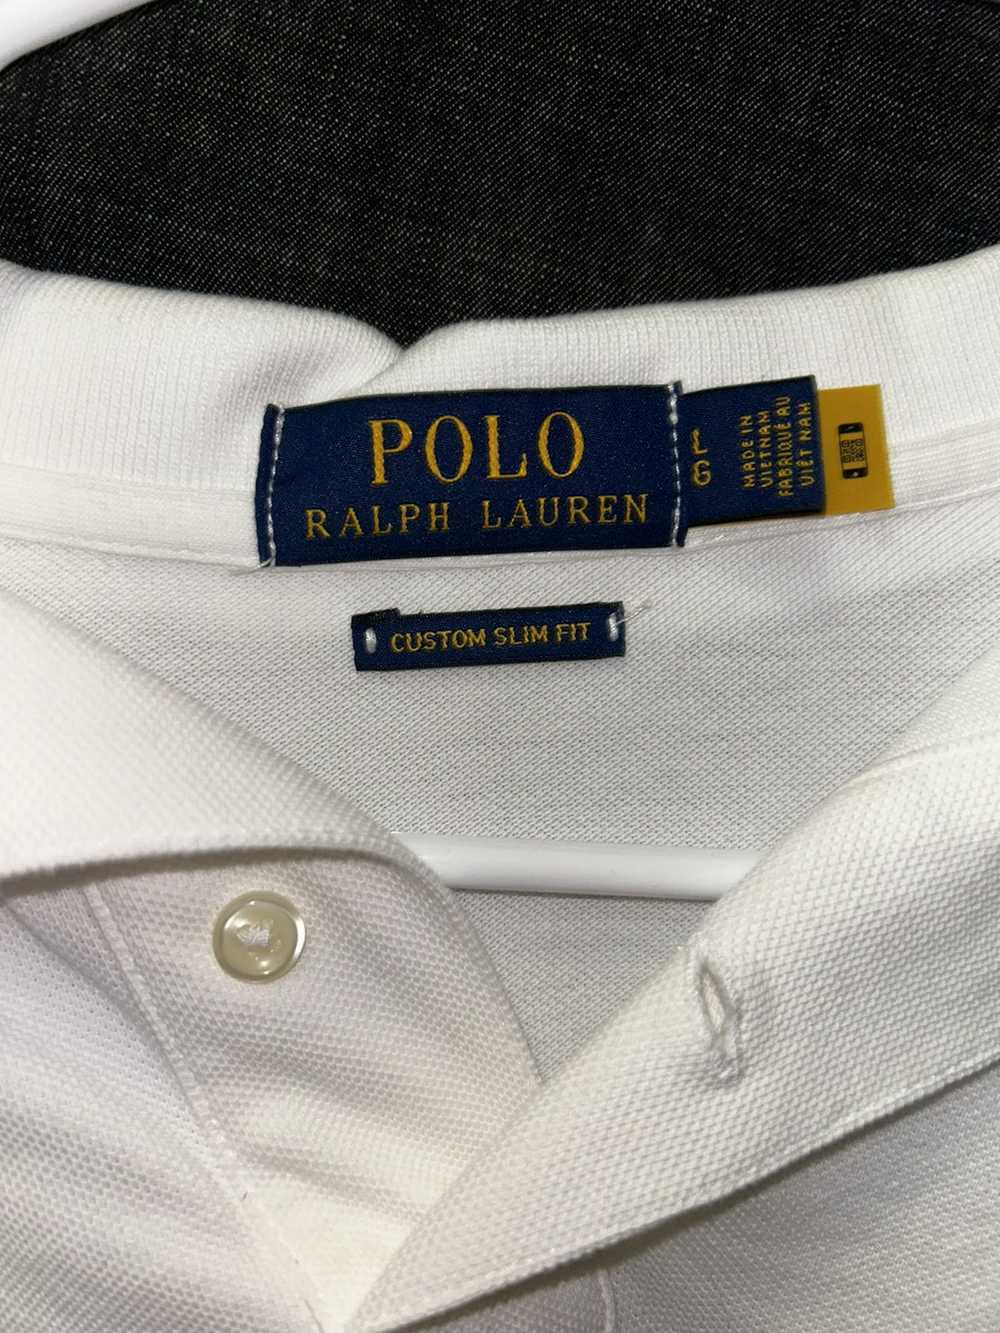 Polo Ralph Lauren Polo Ralph Lauren Polo Bear Polo - image 2